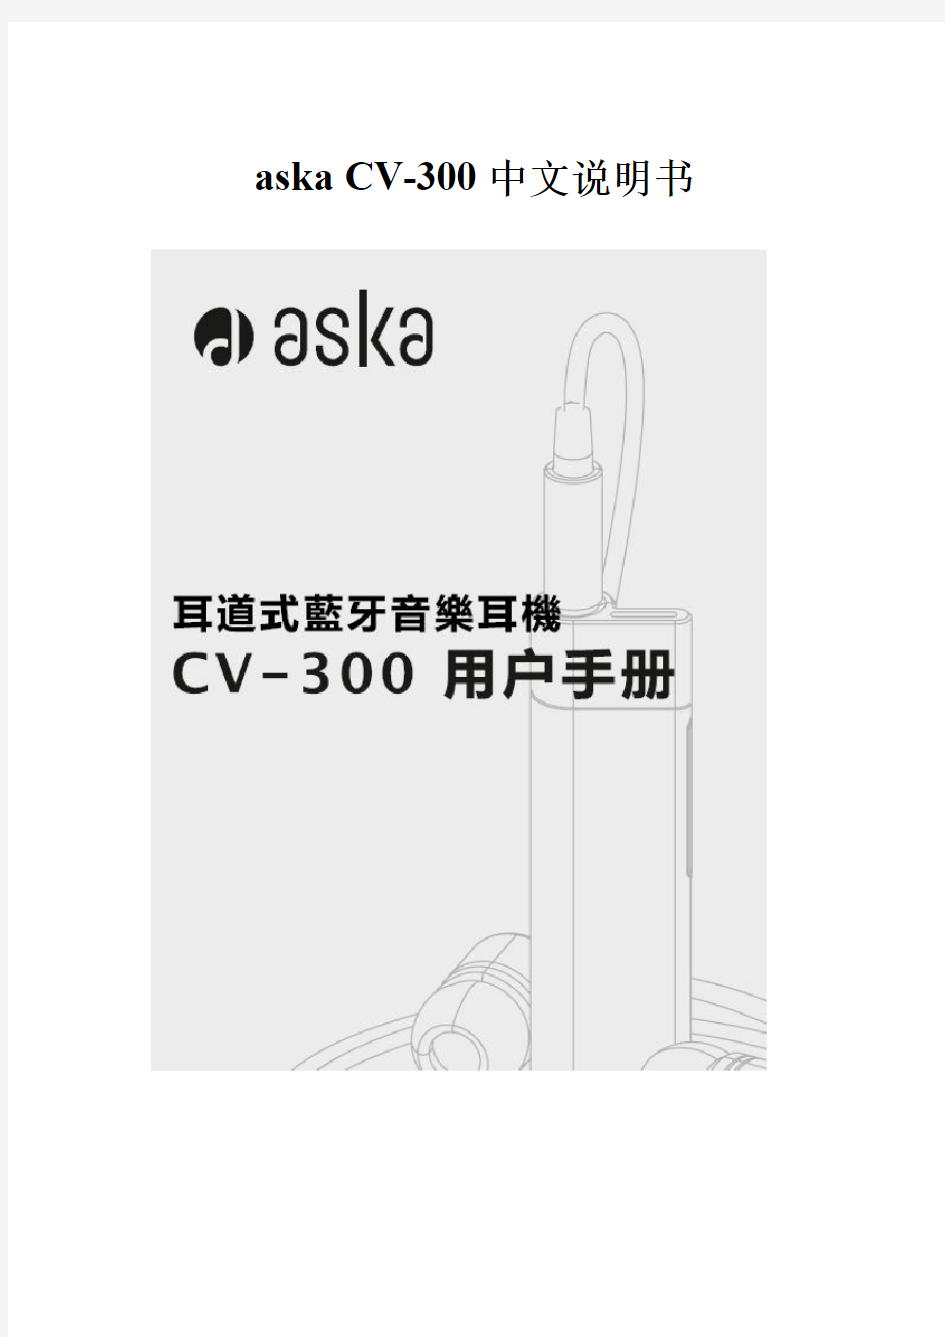 aska CV-300中文说明书